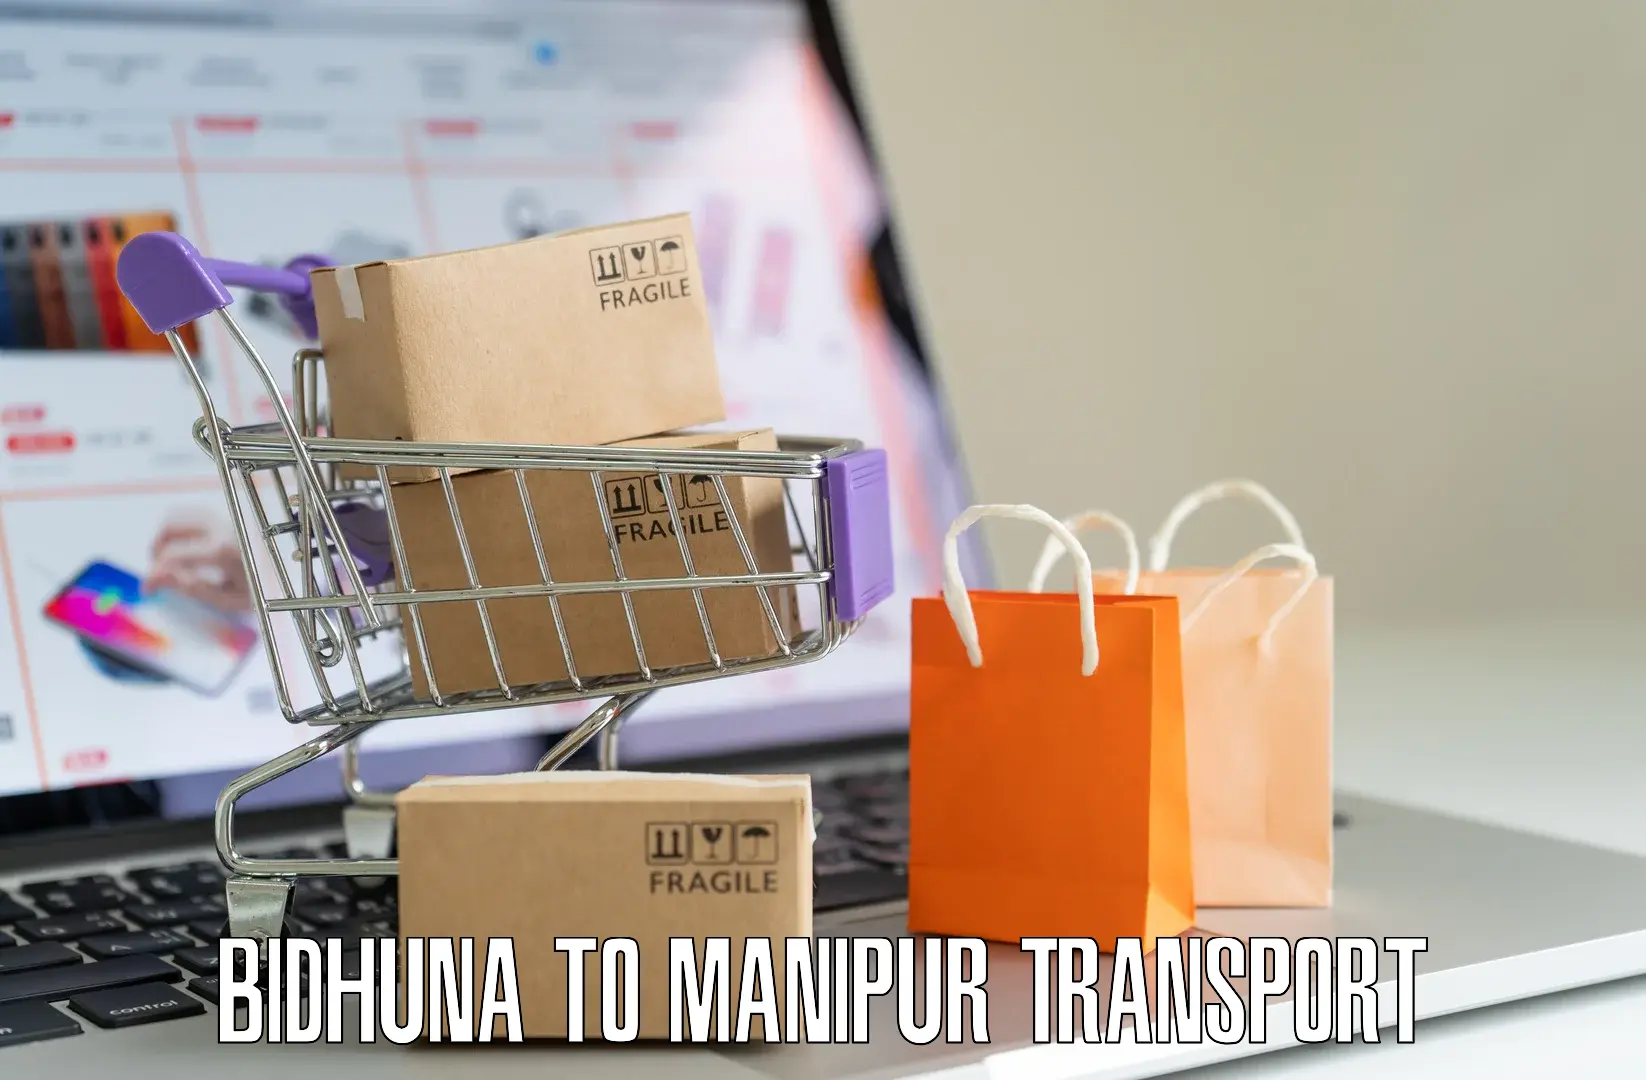 Daily transport service Bidhuna to Kakching